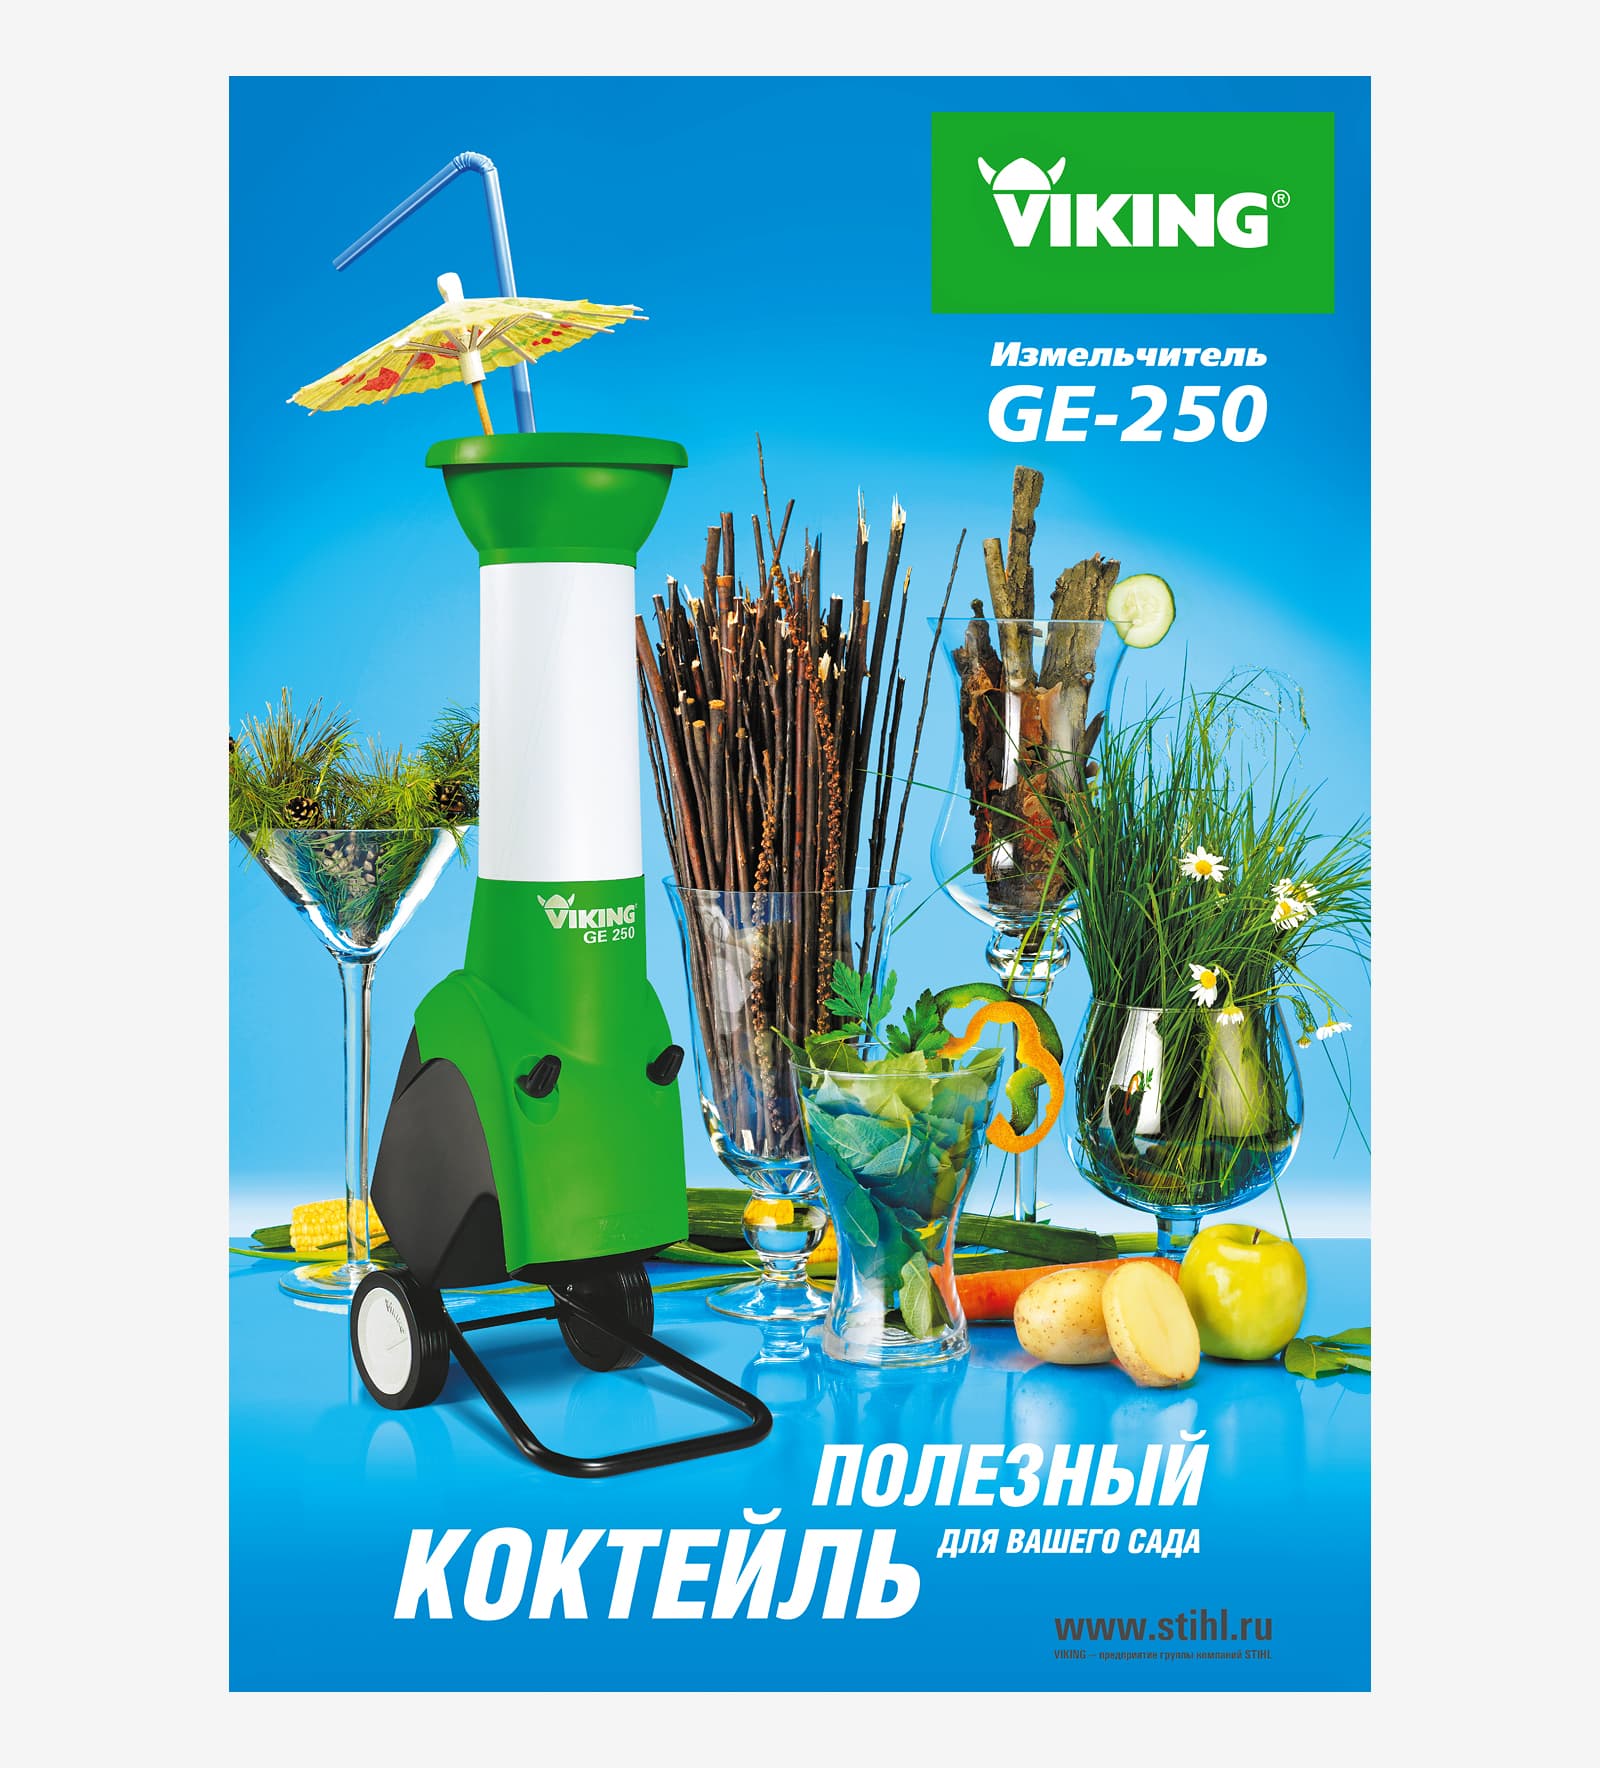 Разработали креативную концепцию для рекламной кампании садового измельчителя бренда VIKING